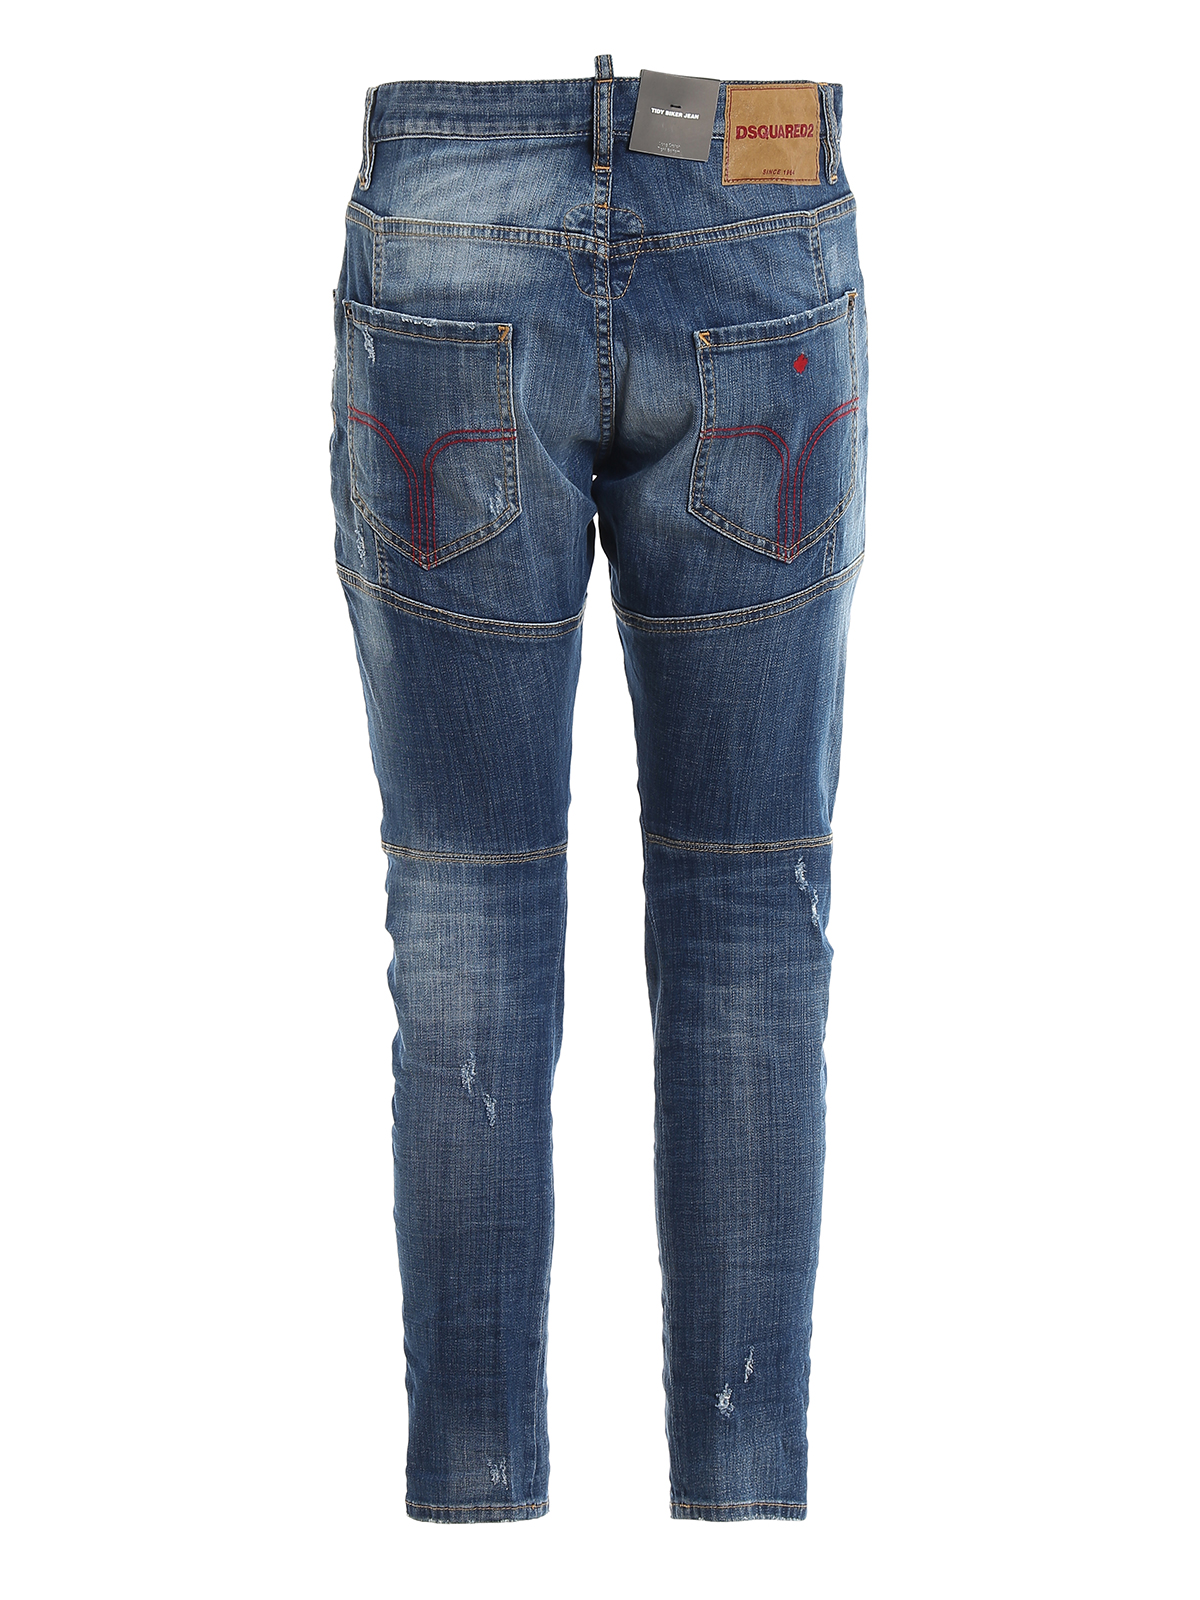 Jeans Rectos Dsquared2 - Vaqueros Rectos - Tidy Biker - S74LB0611S30342470